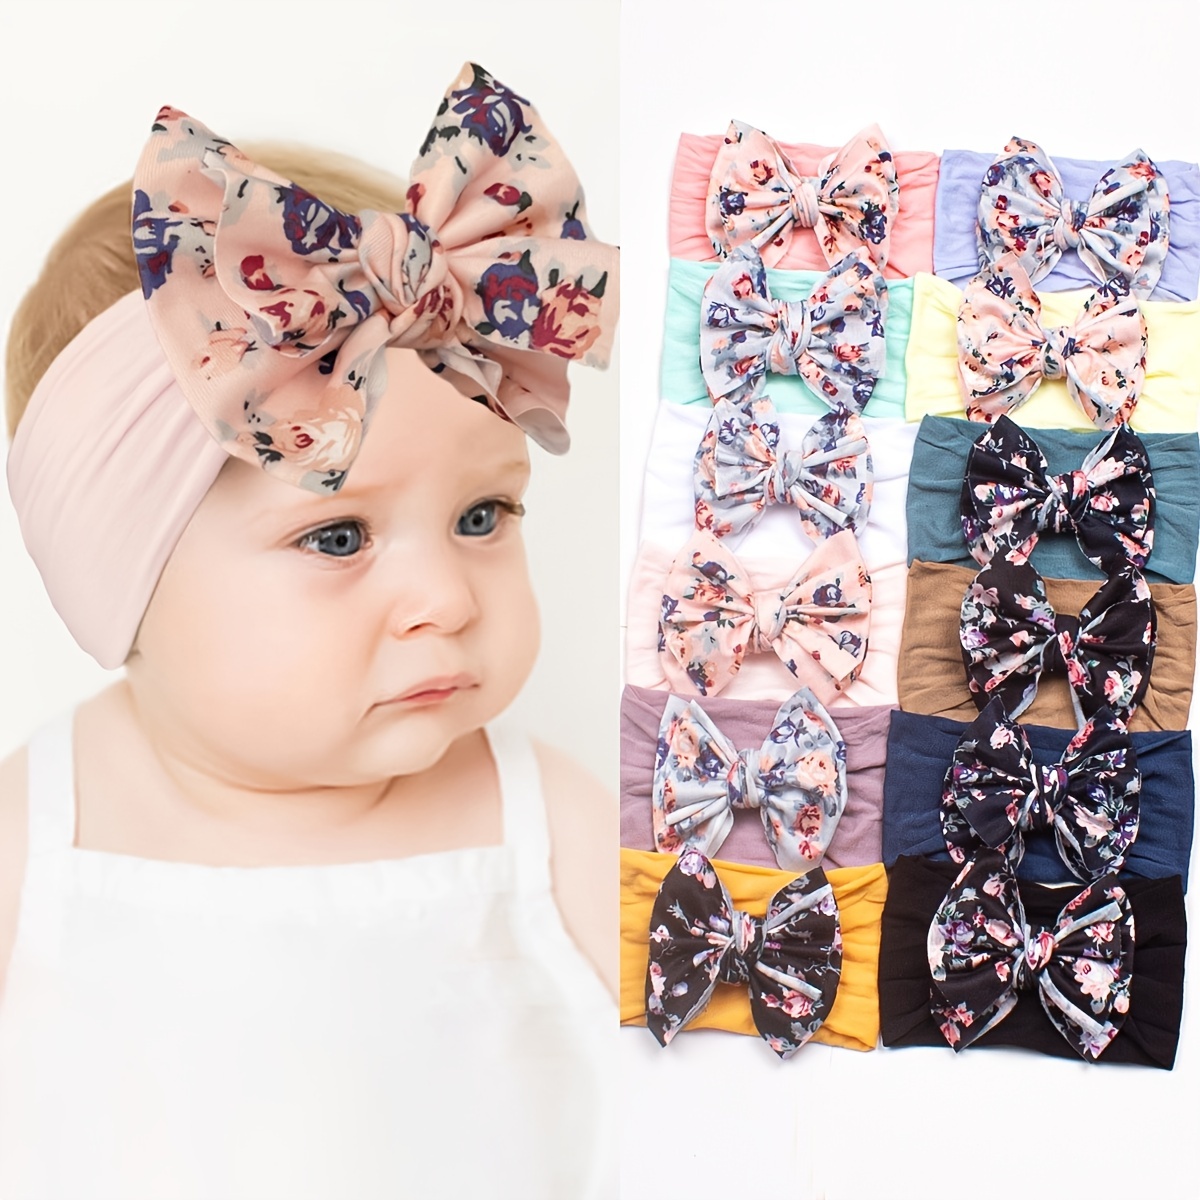 Bandeaux et nœuds pour bébé fille, accessoires pour cheveux en nylon pour  nouveau-nés et tout-petits (10 pièces)Bandeaux pour bébés filles 10 pièces  